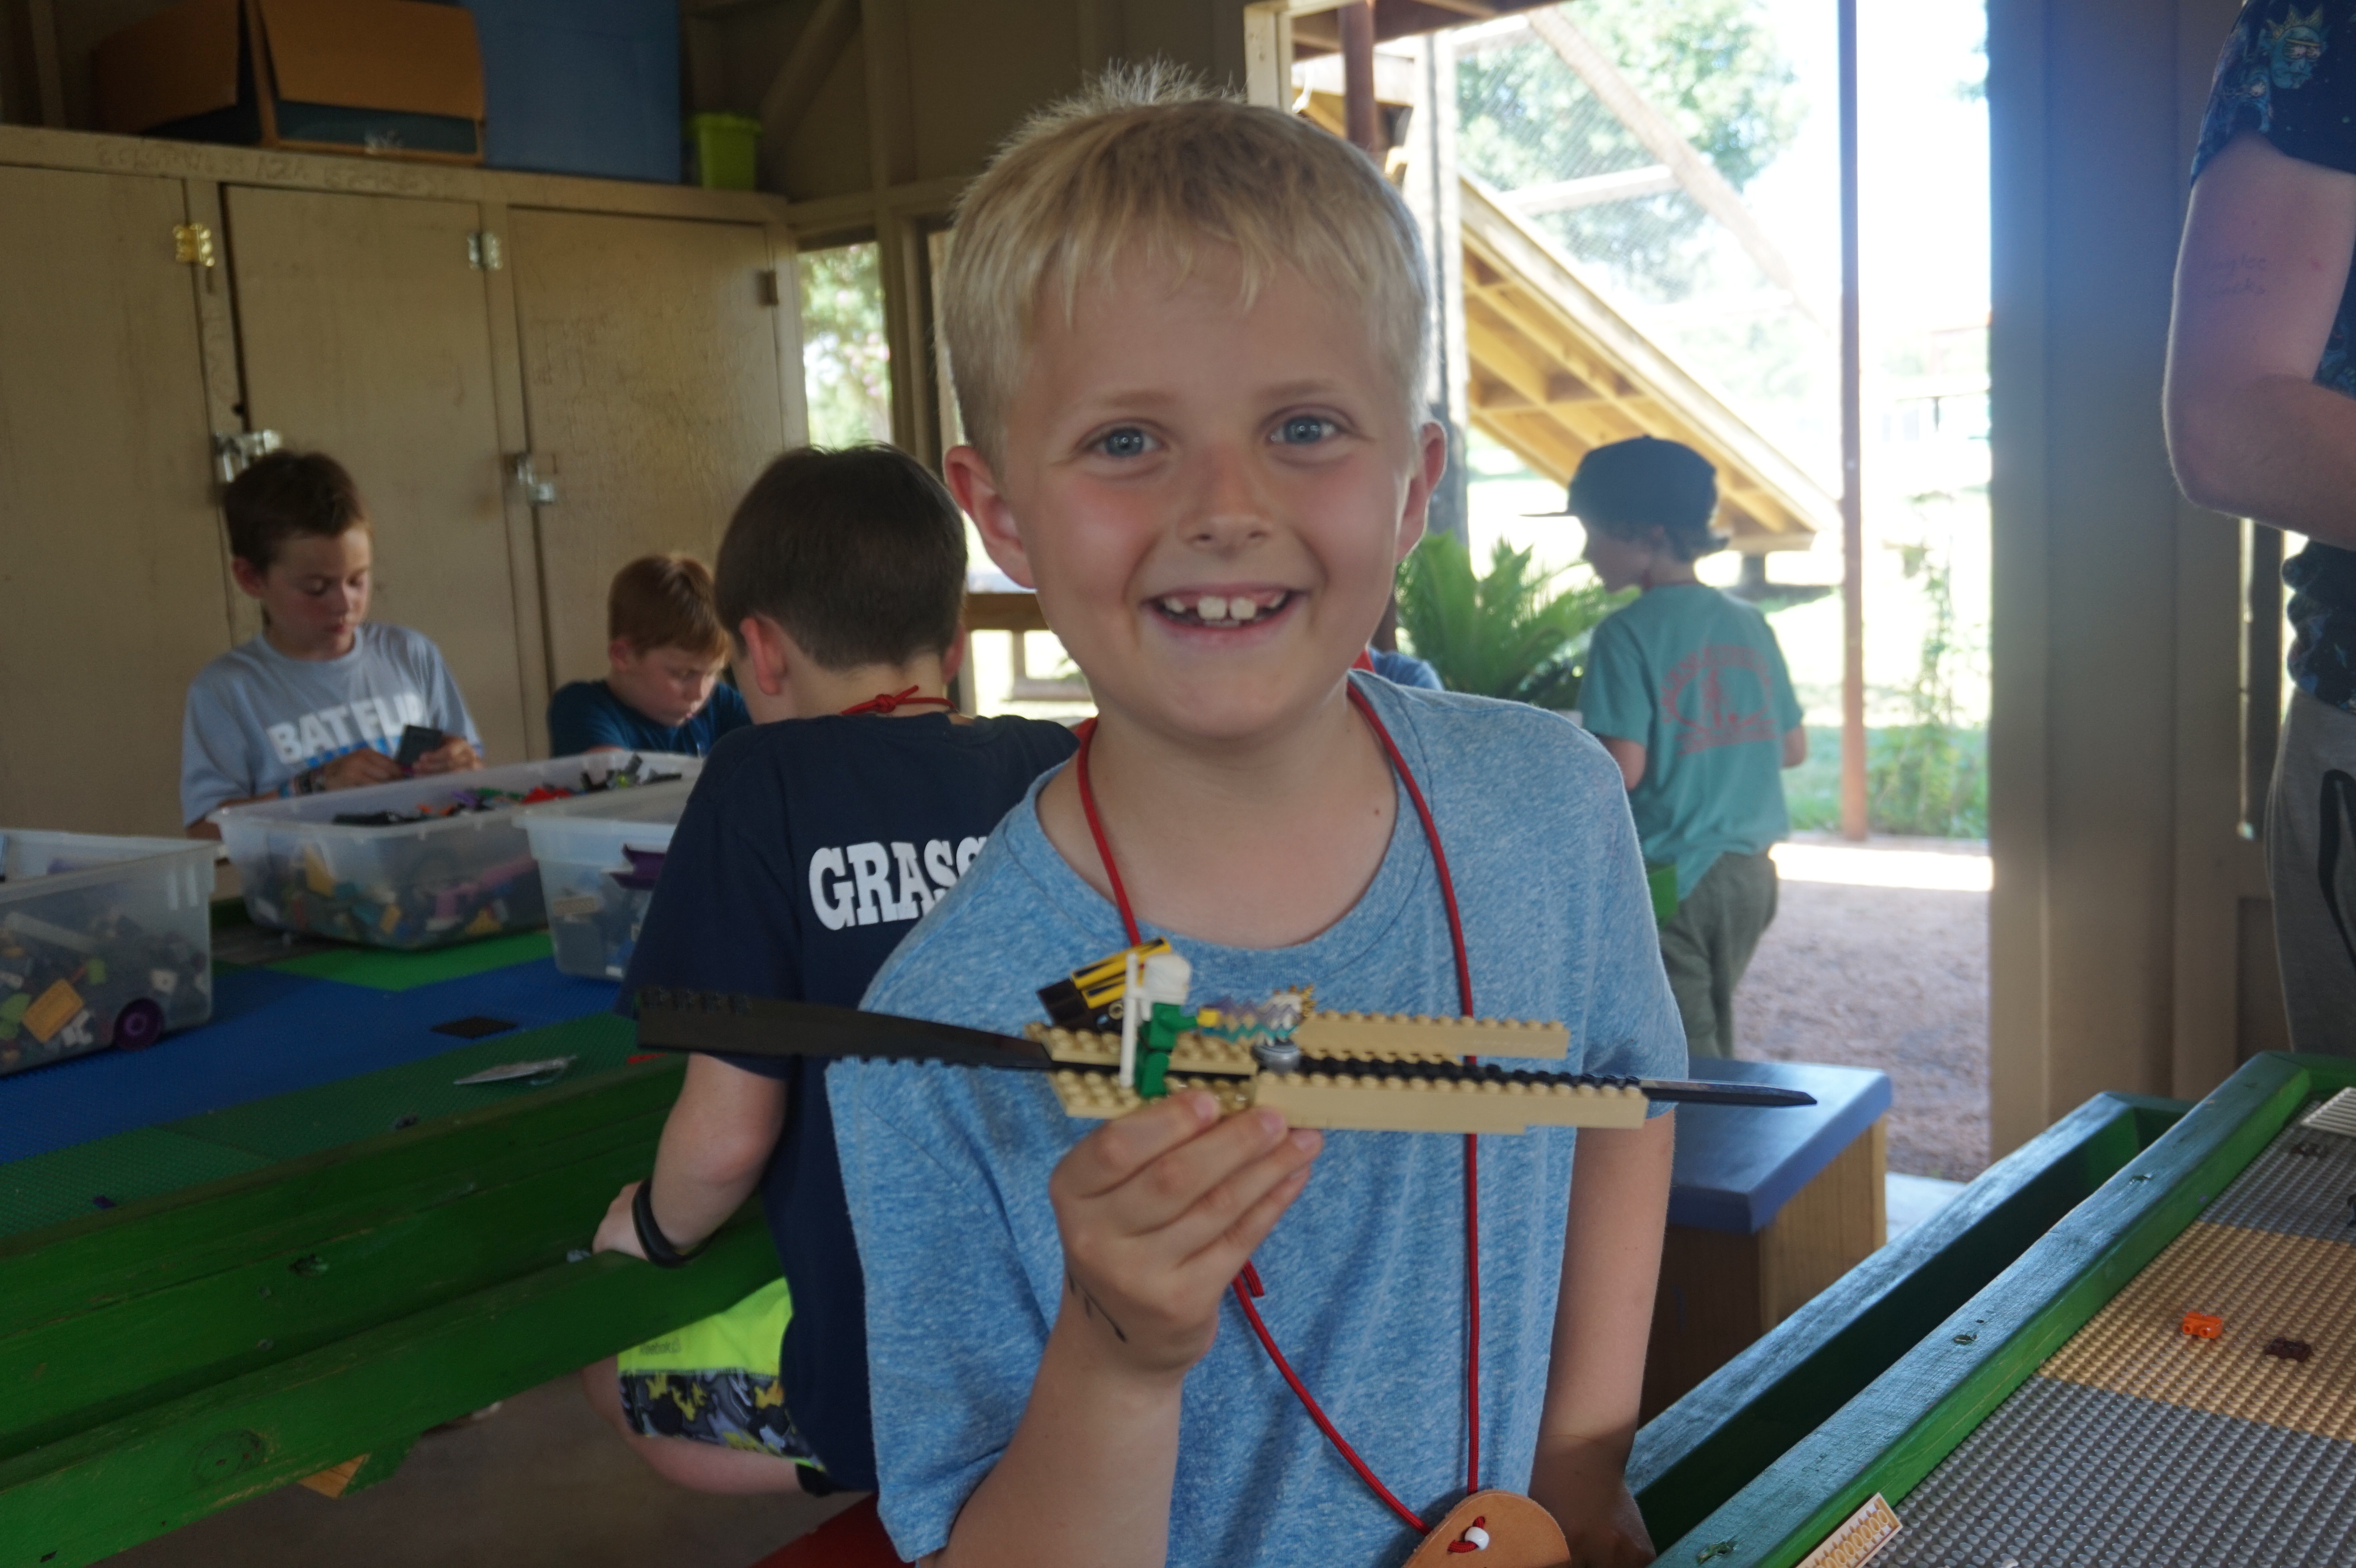 Boy with lego plane